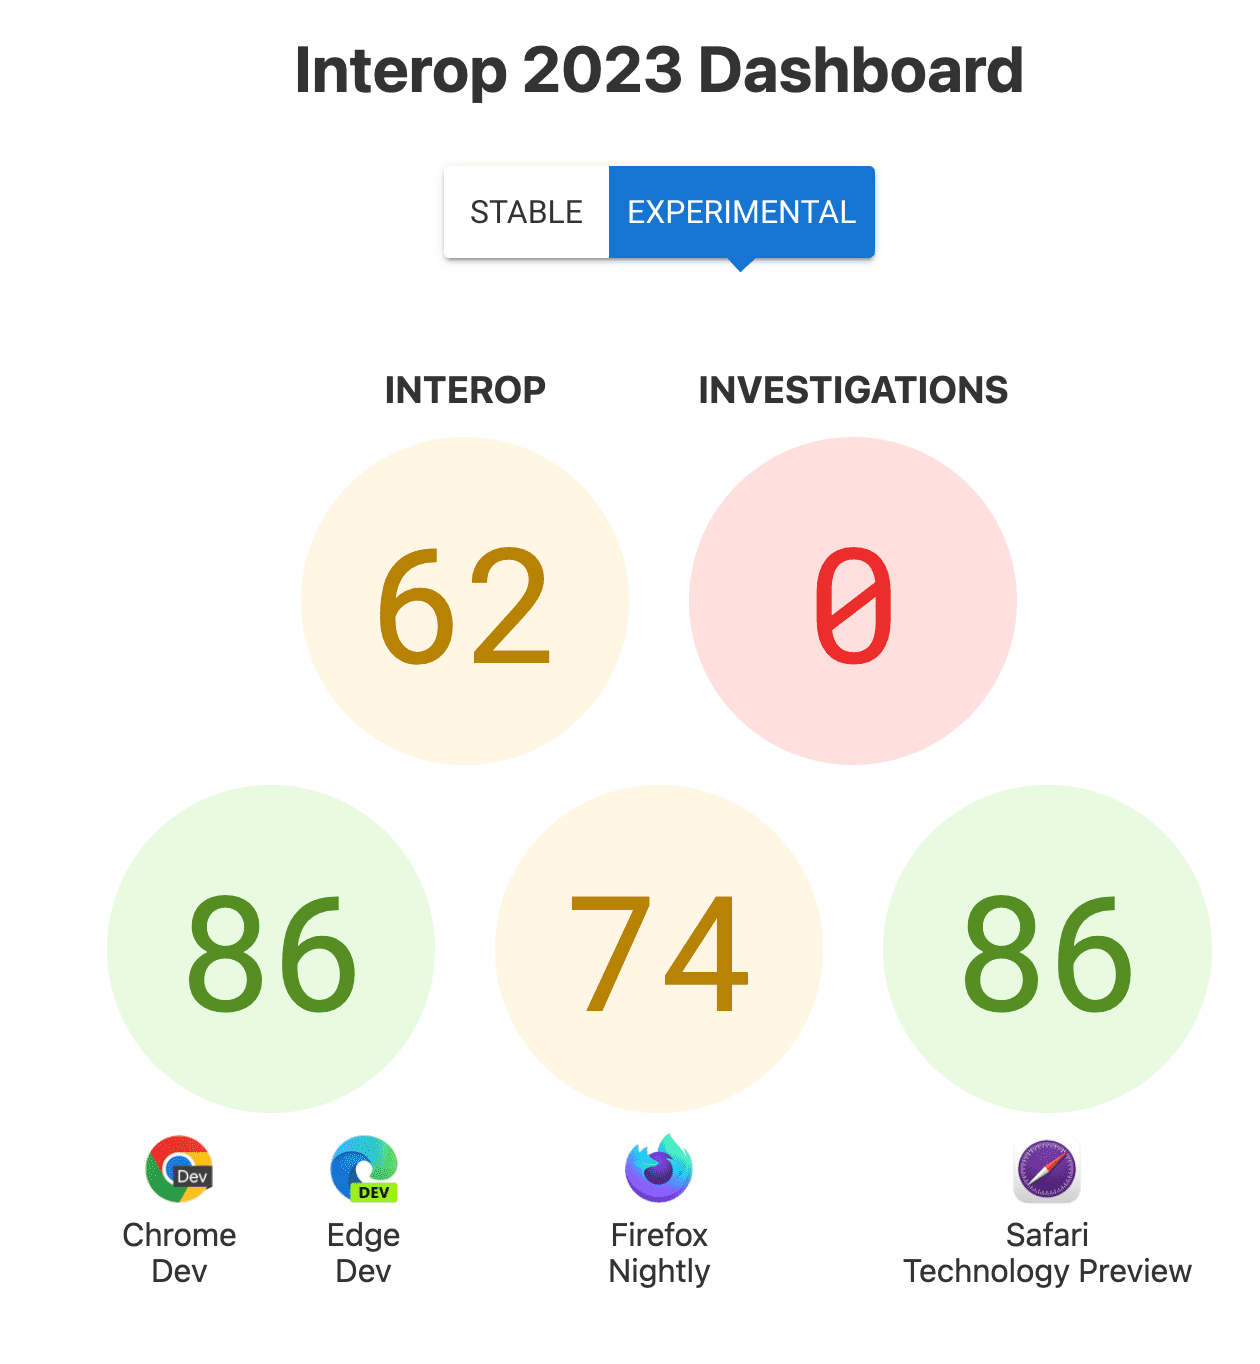 Die Punktzahlen für Interop insgesamt: 62, Untersuchungen: 0 und die Punktzahlen pro Browser: 86 für Chrome und Edge, 74 für Firefox, 86 für Safari Technology Preview.